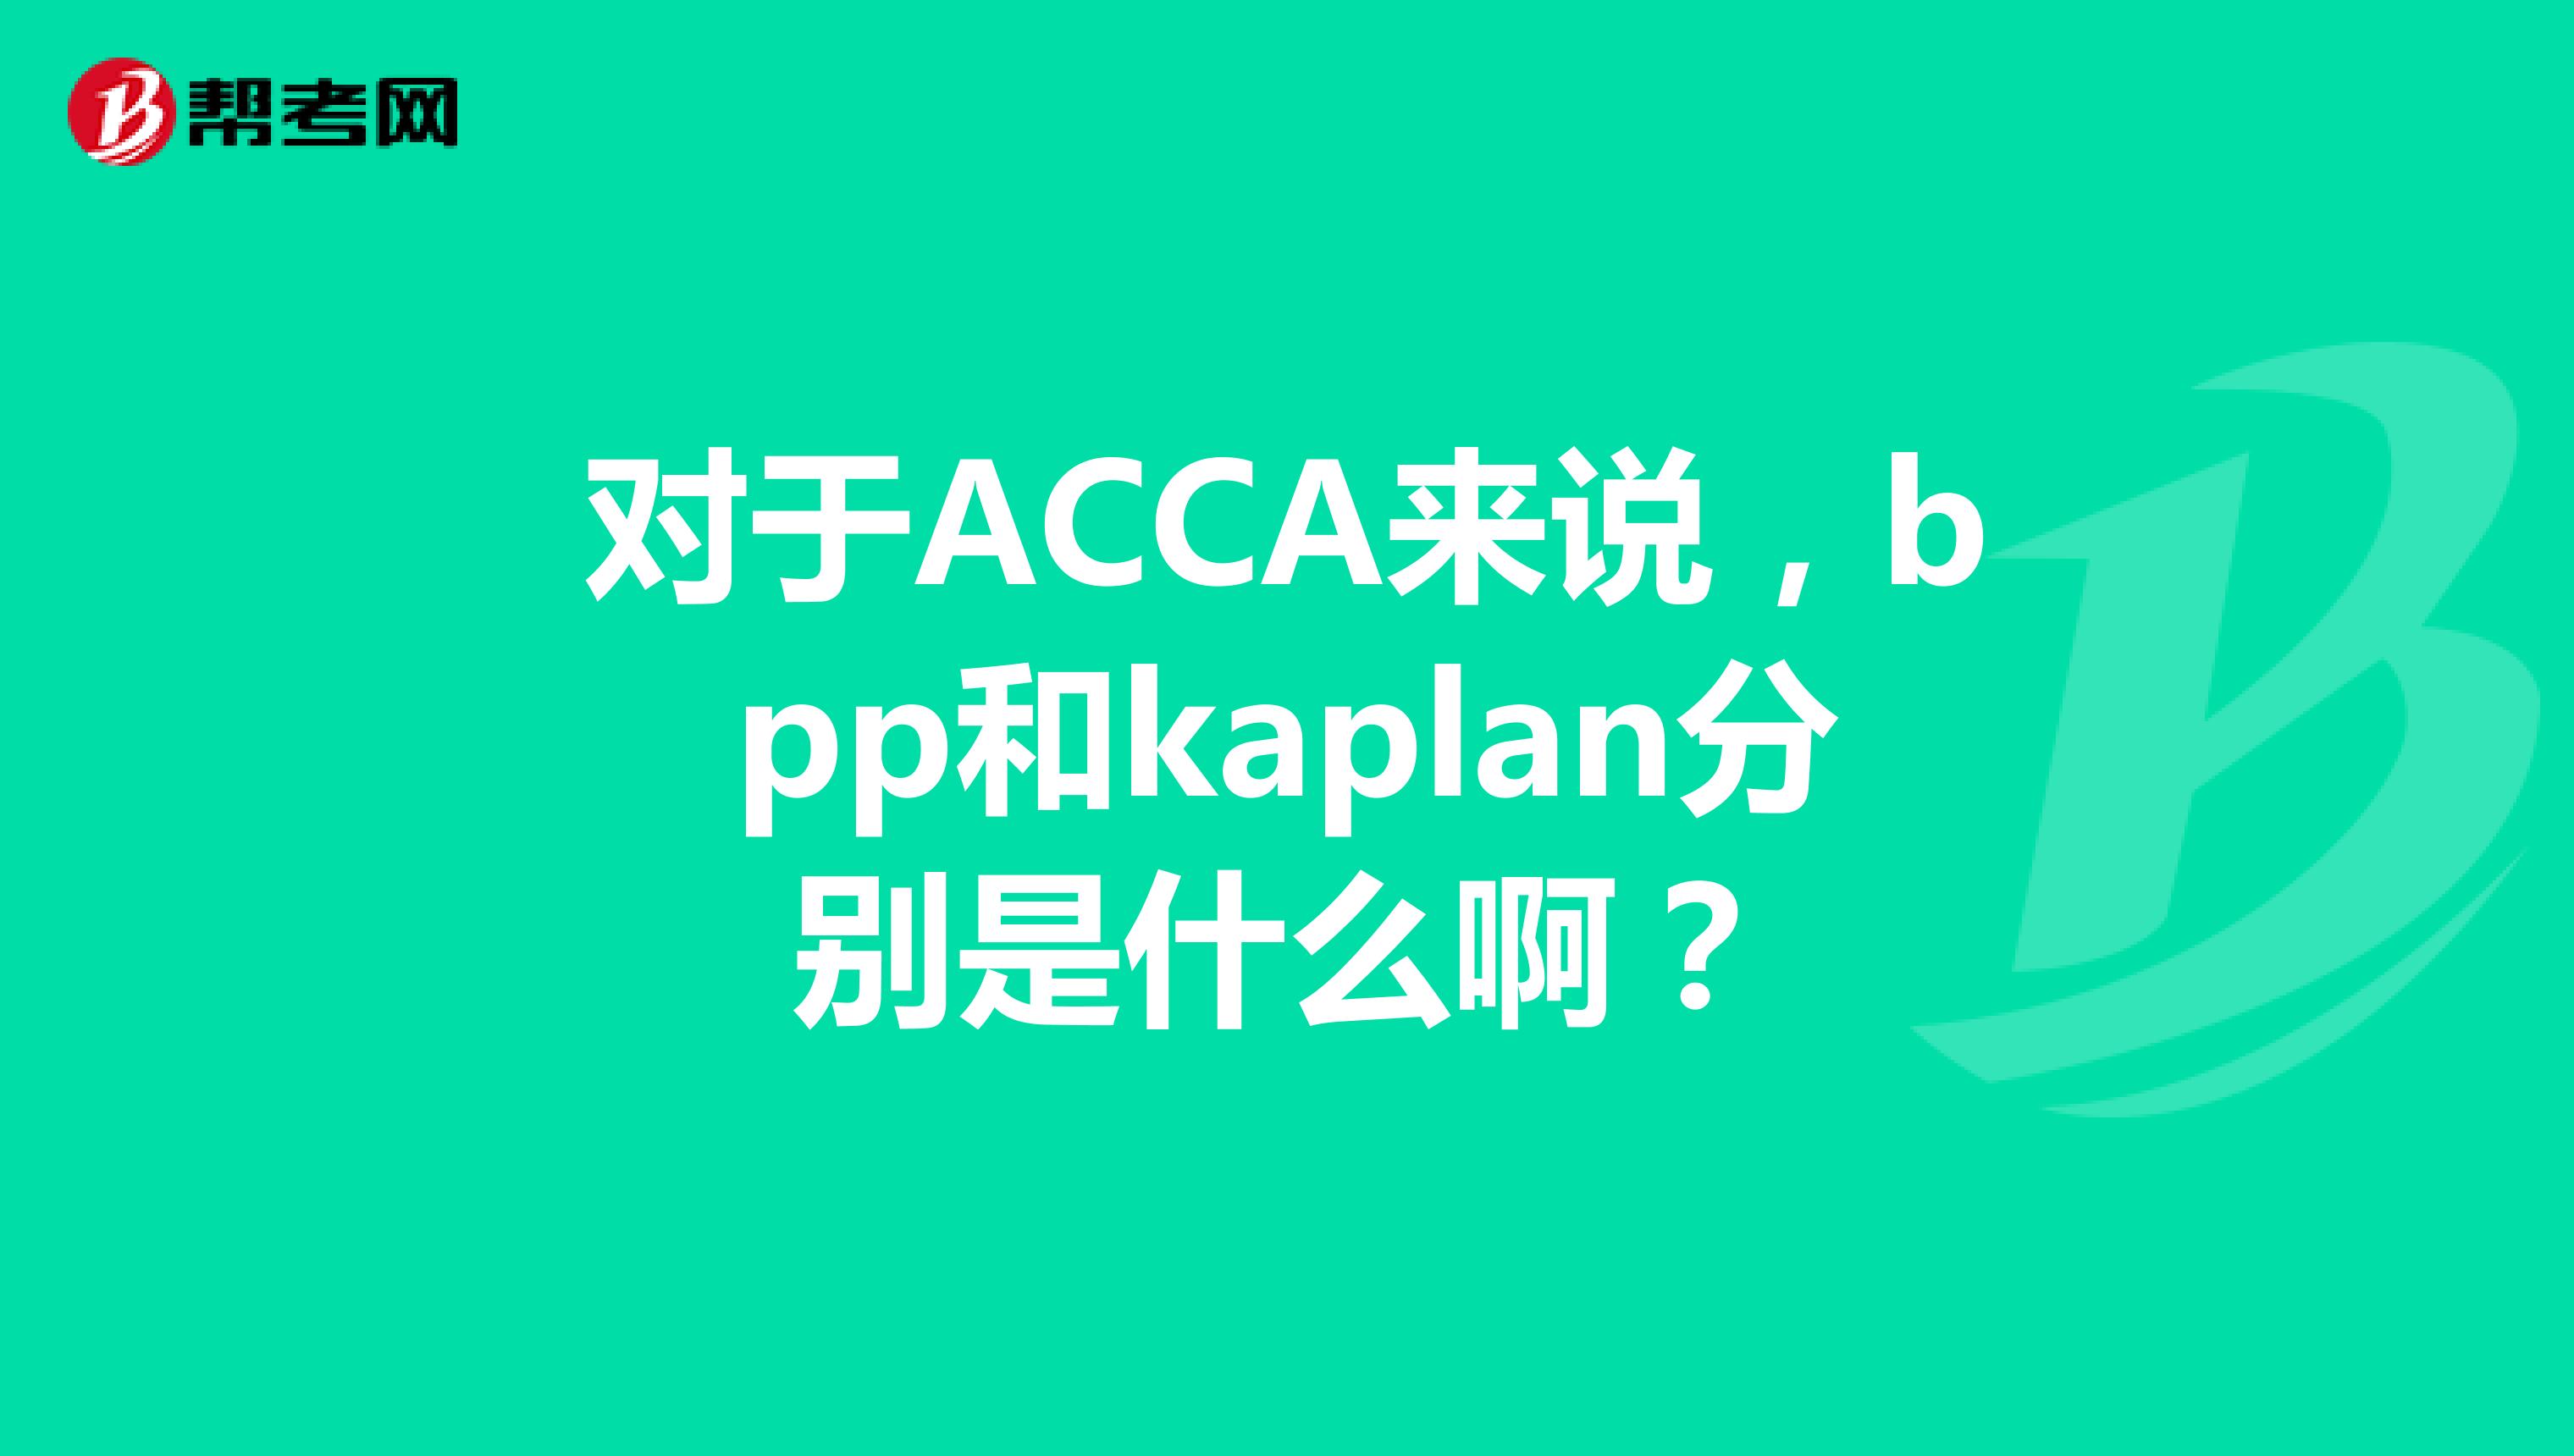 对于ACCA来说，bpp和kaplan分别是什么啊？